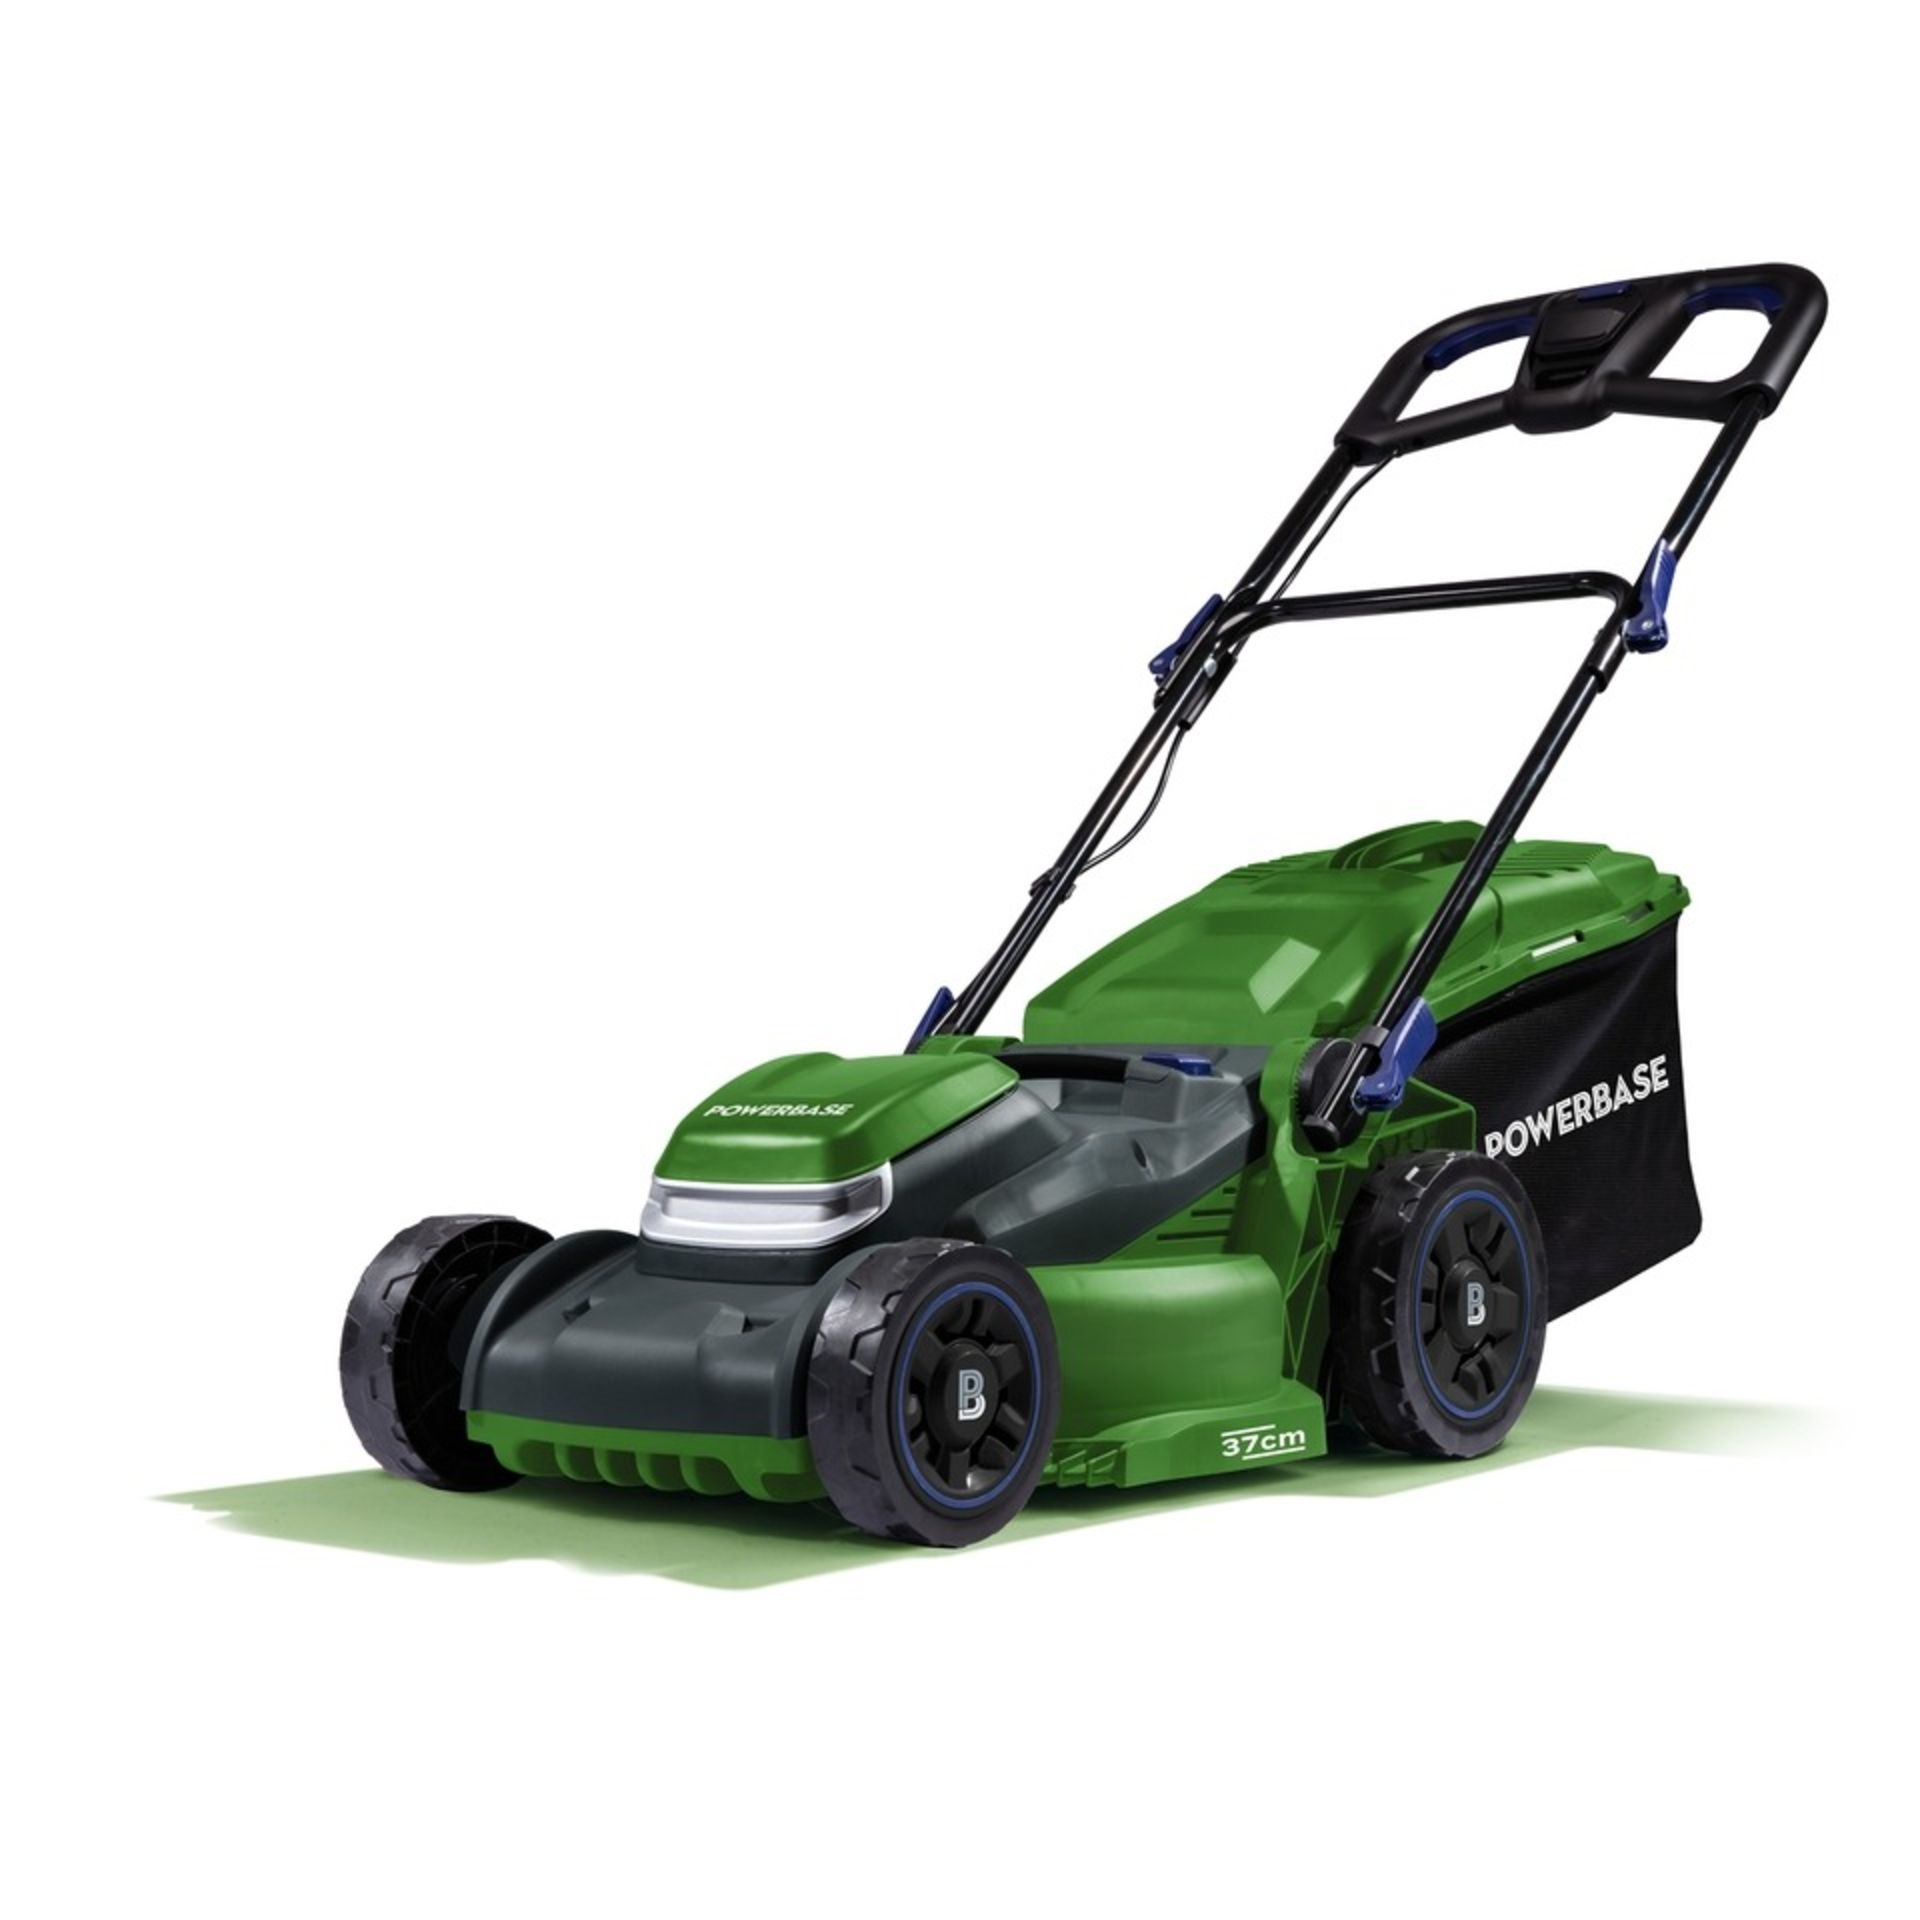 Powerbase cordless lawnmower - ER28